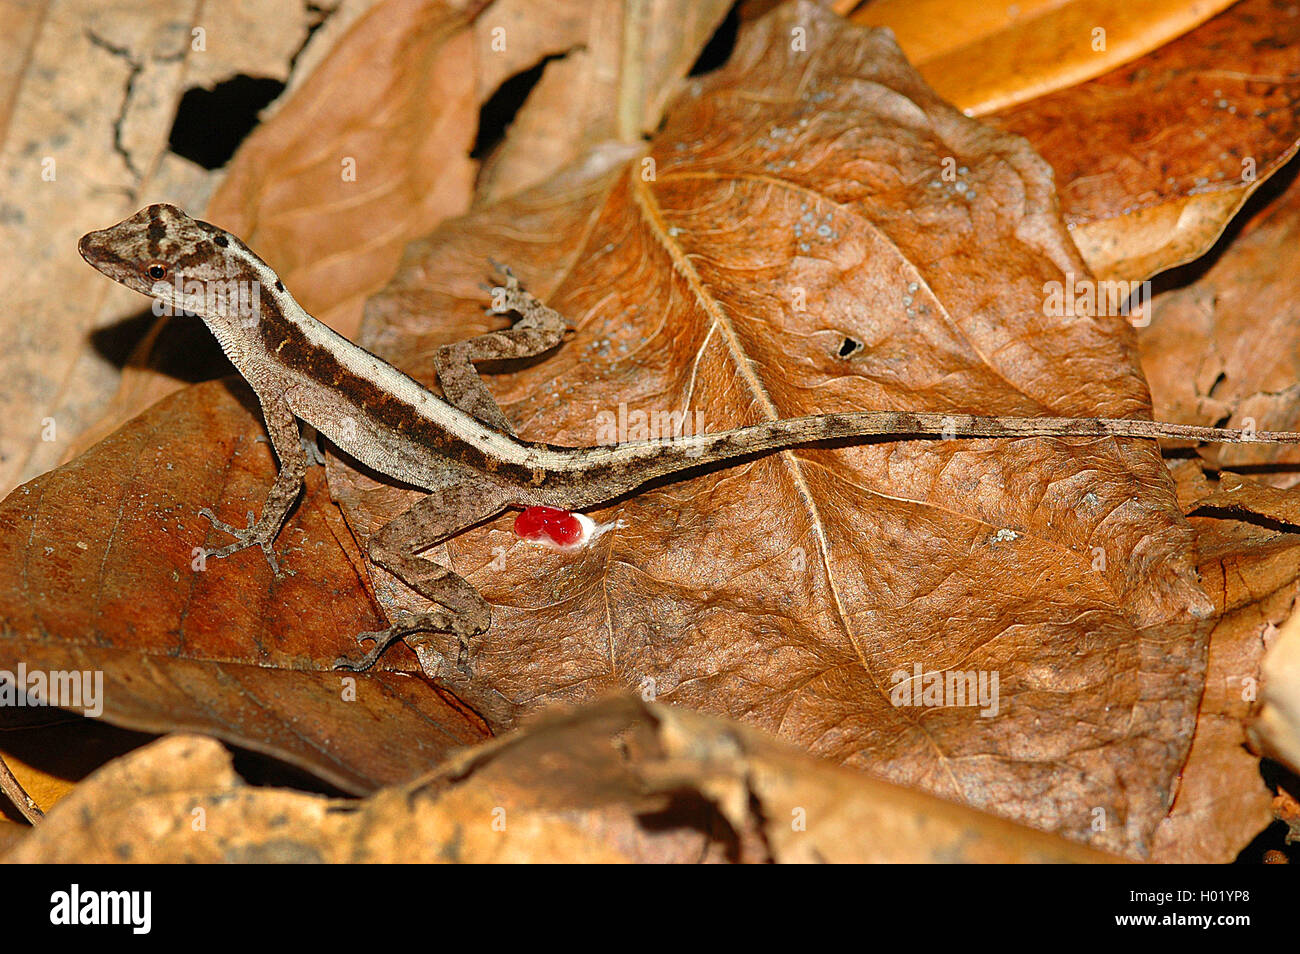 Kupferanolis, Kupfer-Anolis (Norops cupreus), auf Falllaub, Costa Rica | Copper Anole (Norops cupreus), on fallen leaves, Costa  Stock Photo